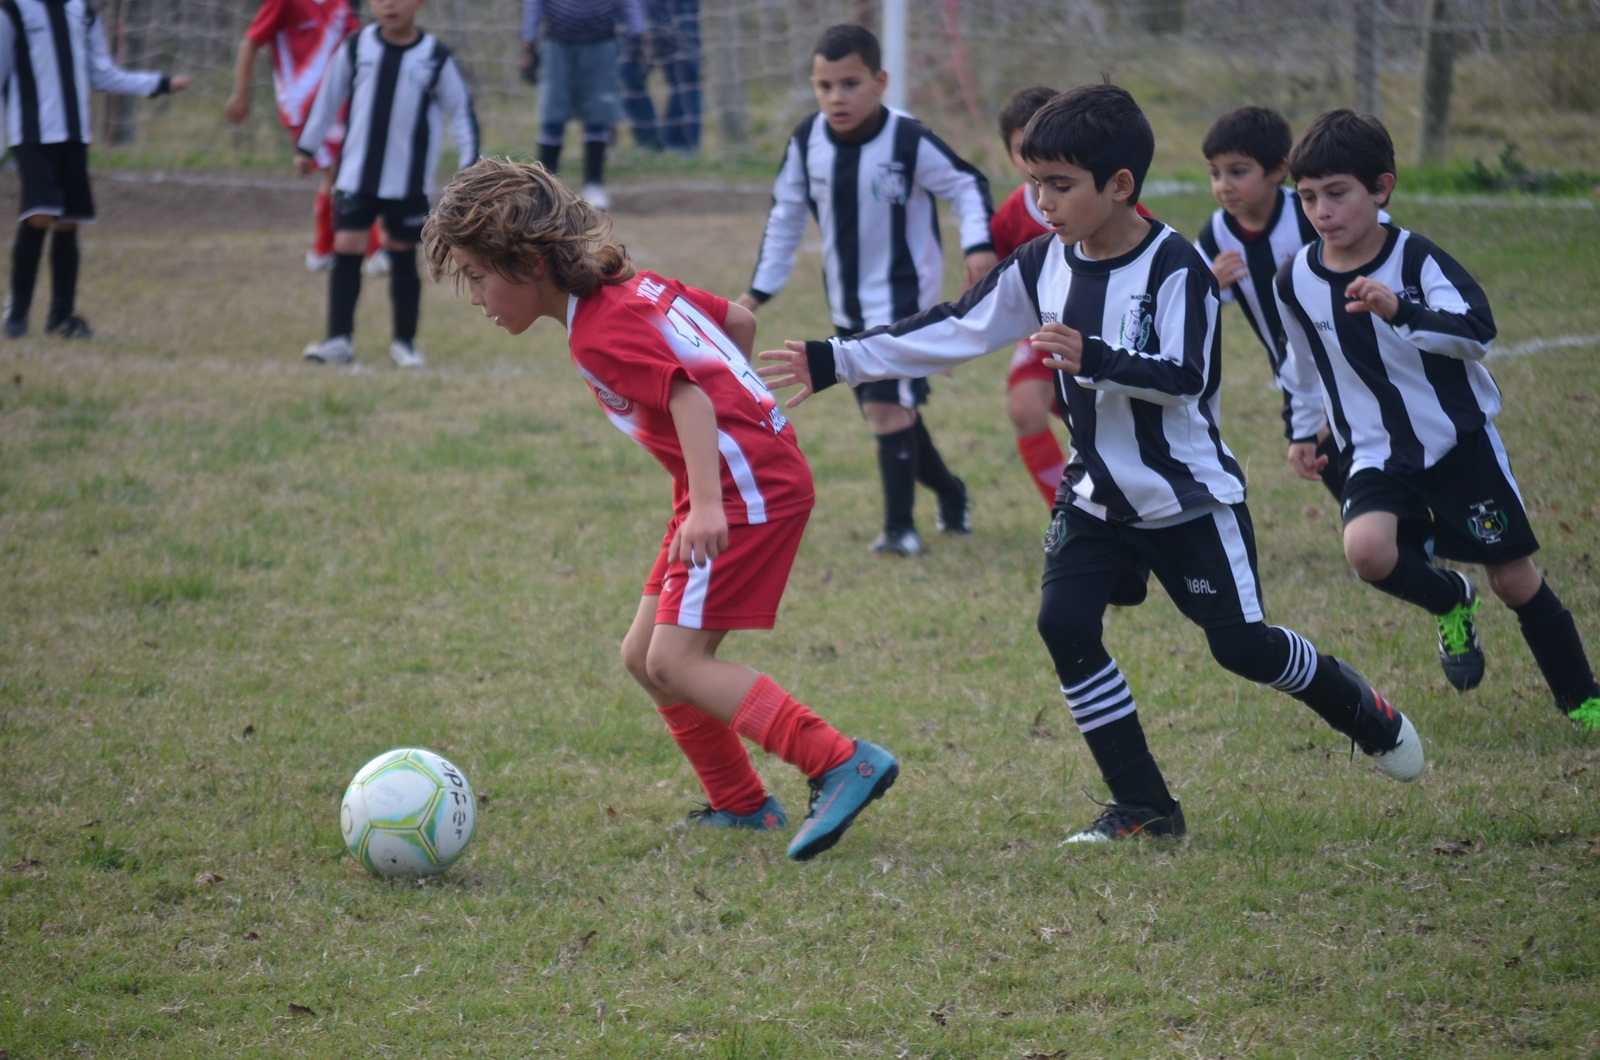 Se jugó otra jornada en el Baby Fútbol canario que se completa mañana  miércoles con un partido. – HOY CANELONES